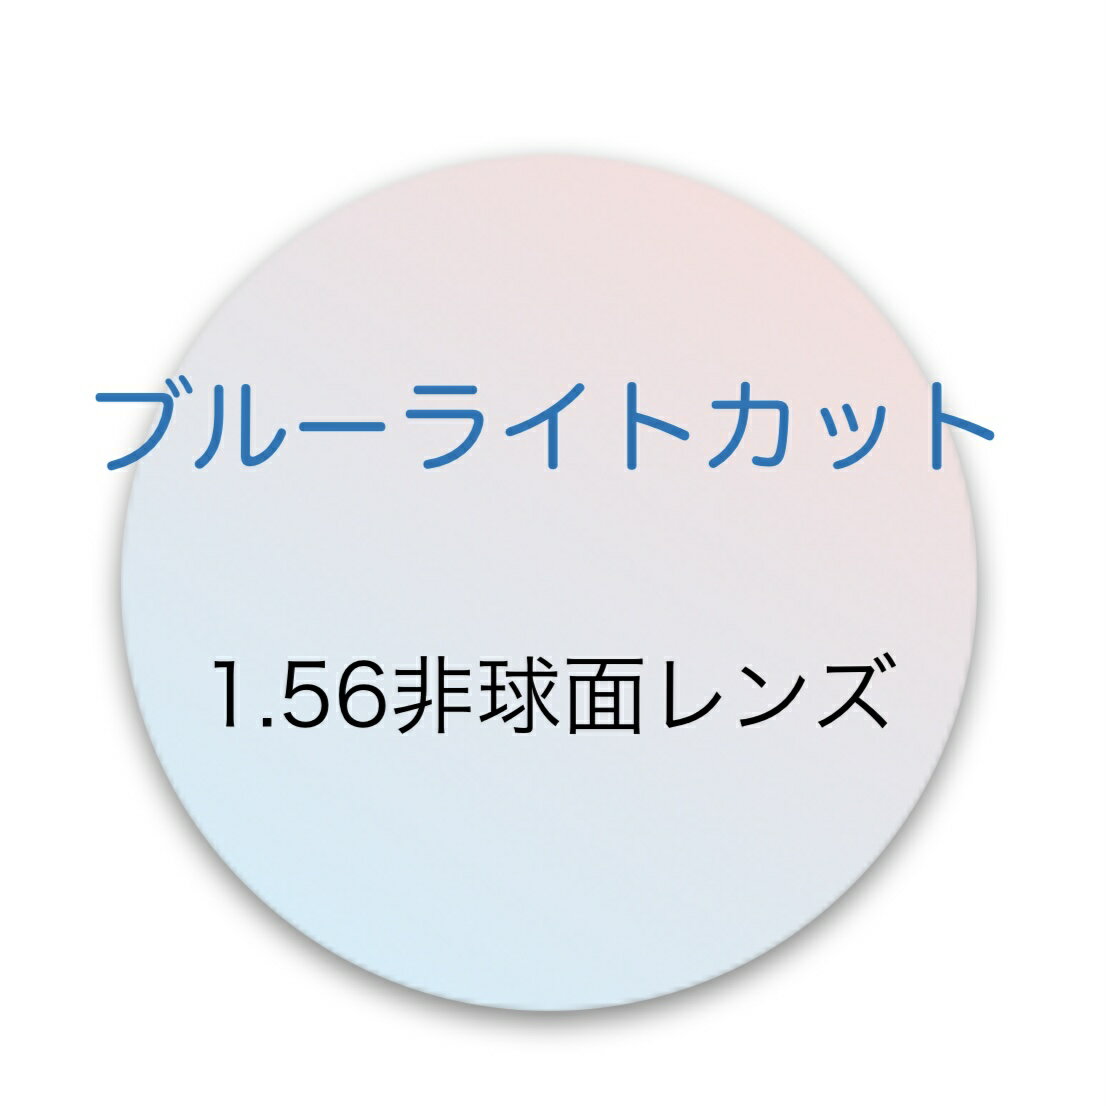 【追加商品】厚さ標準 1.56非球面ブルーライトカットレンズ